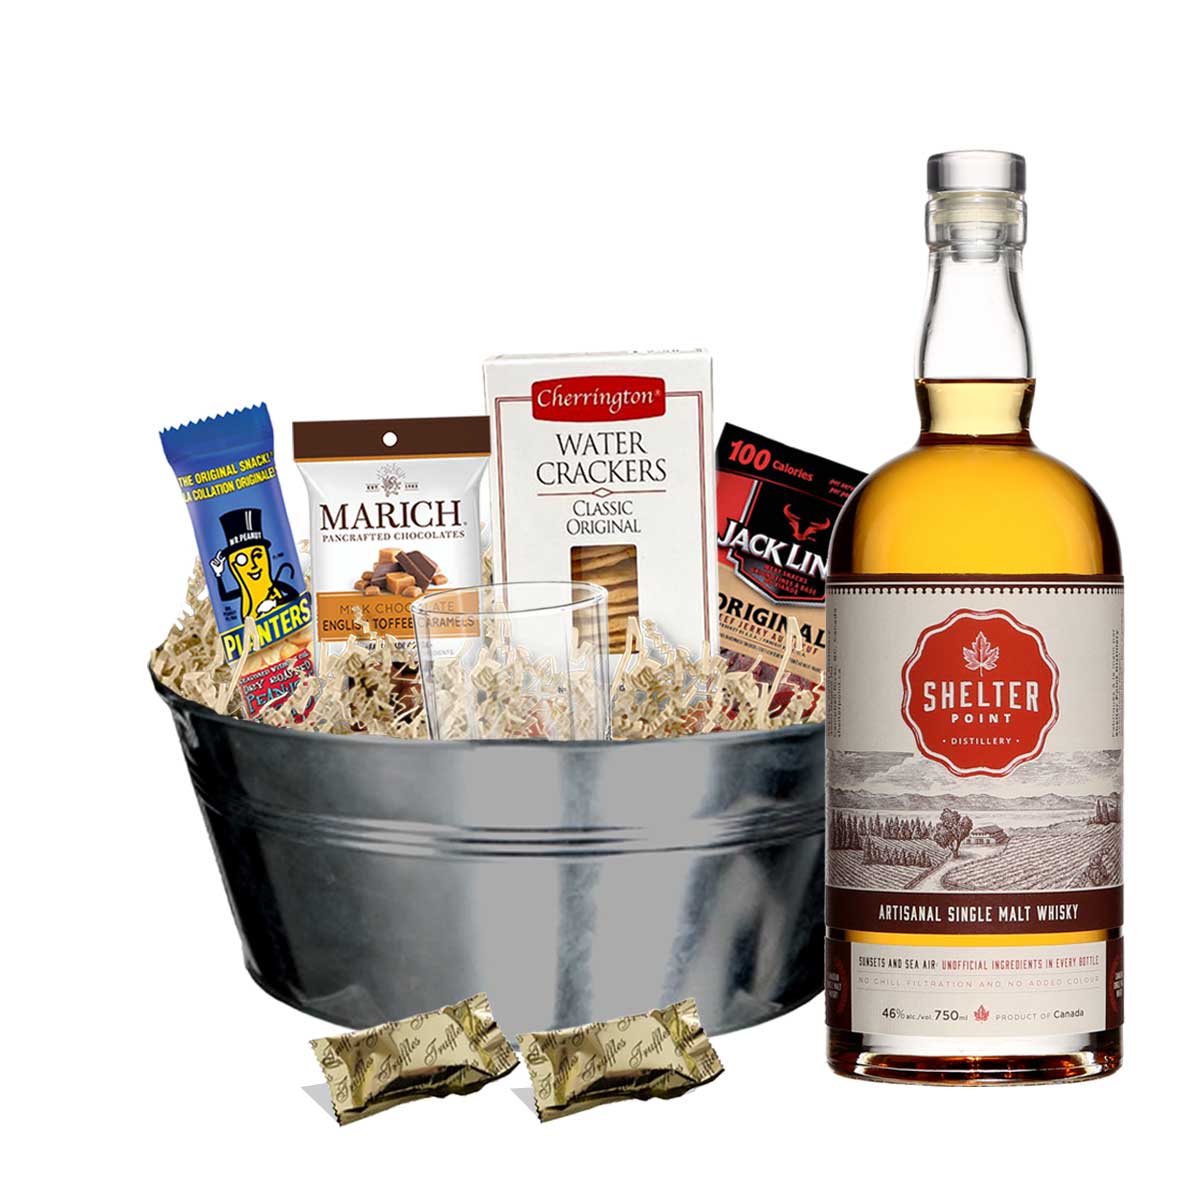 TAG Liquor Stores BC - Shelter Point Artisanal Single Malt Whisky 750ml Gift Basket